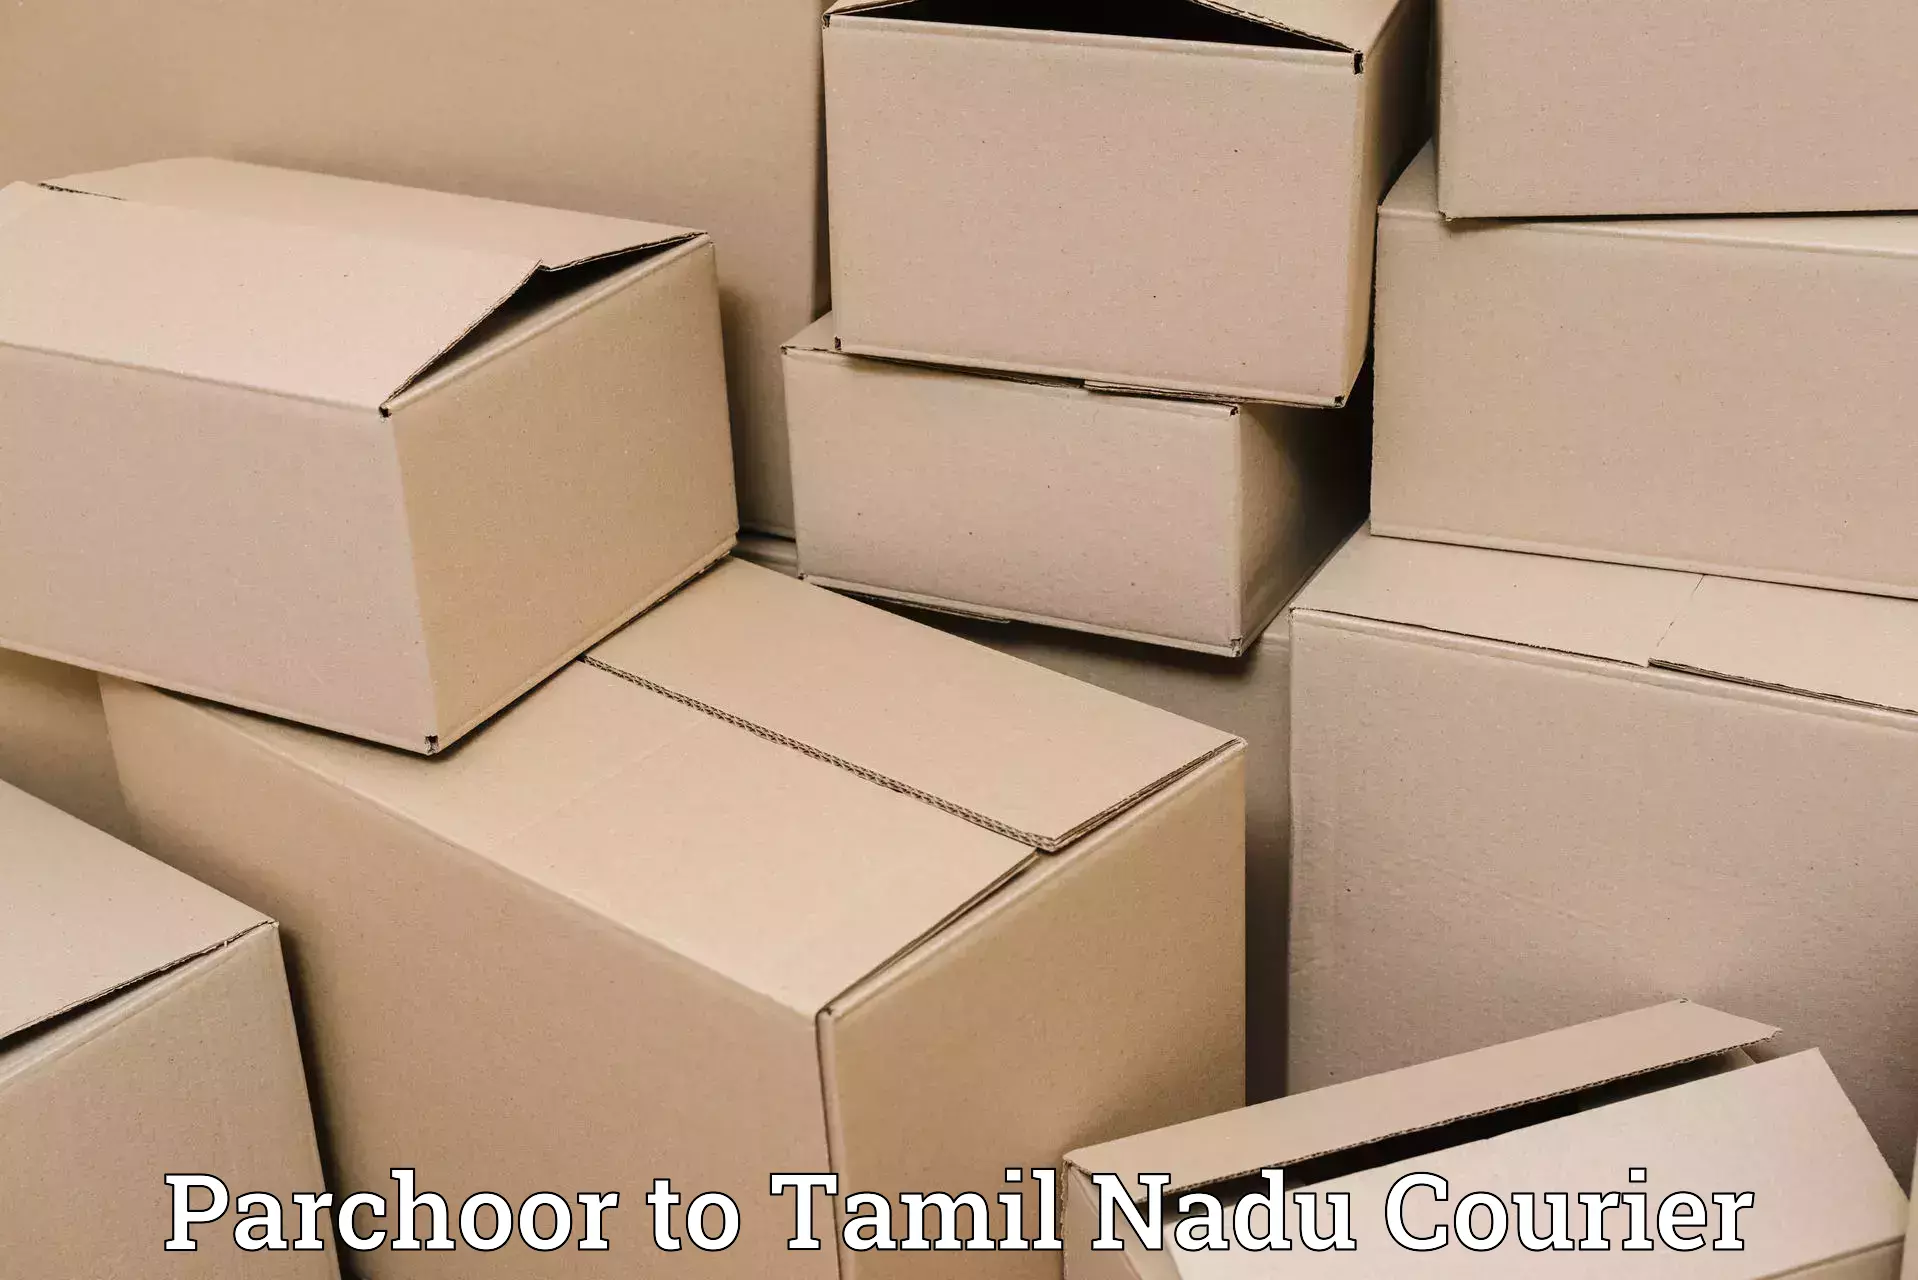 Advanced logistics management Parchoor to Tamil Nadu